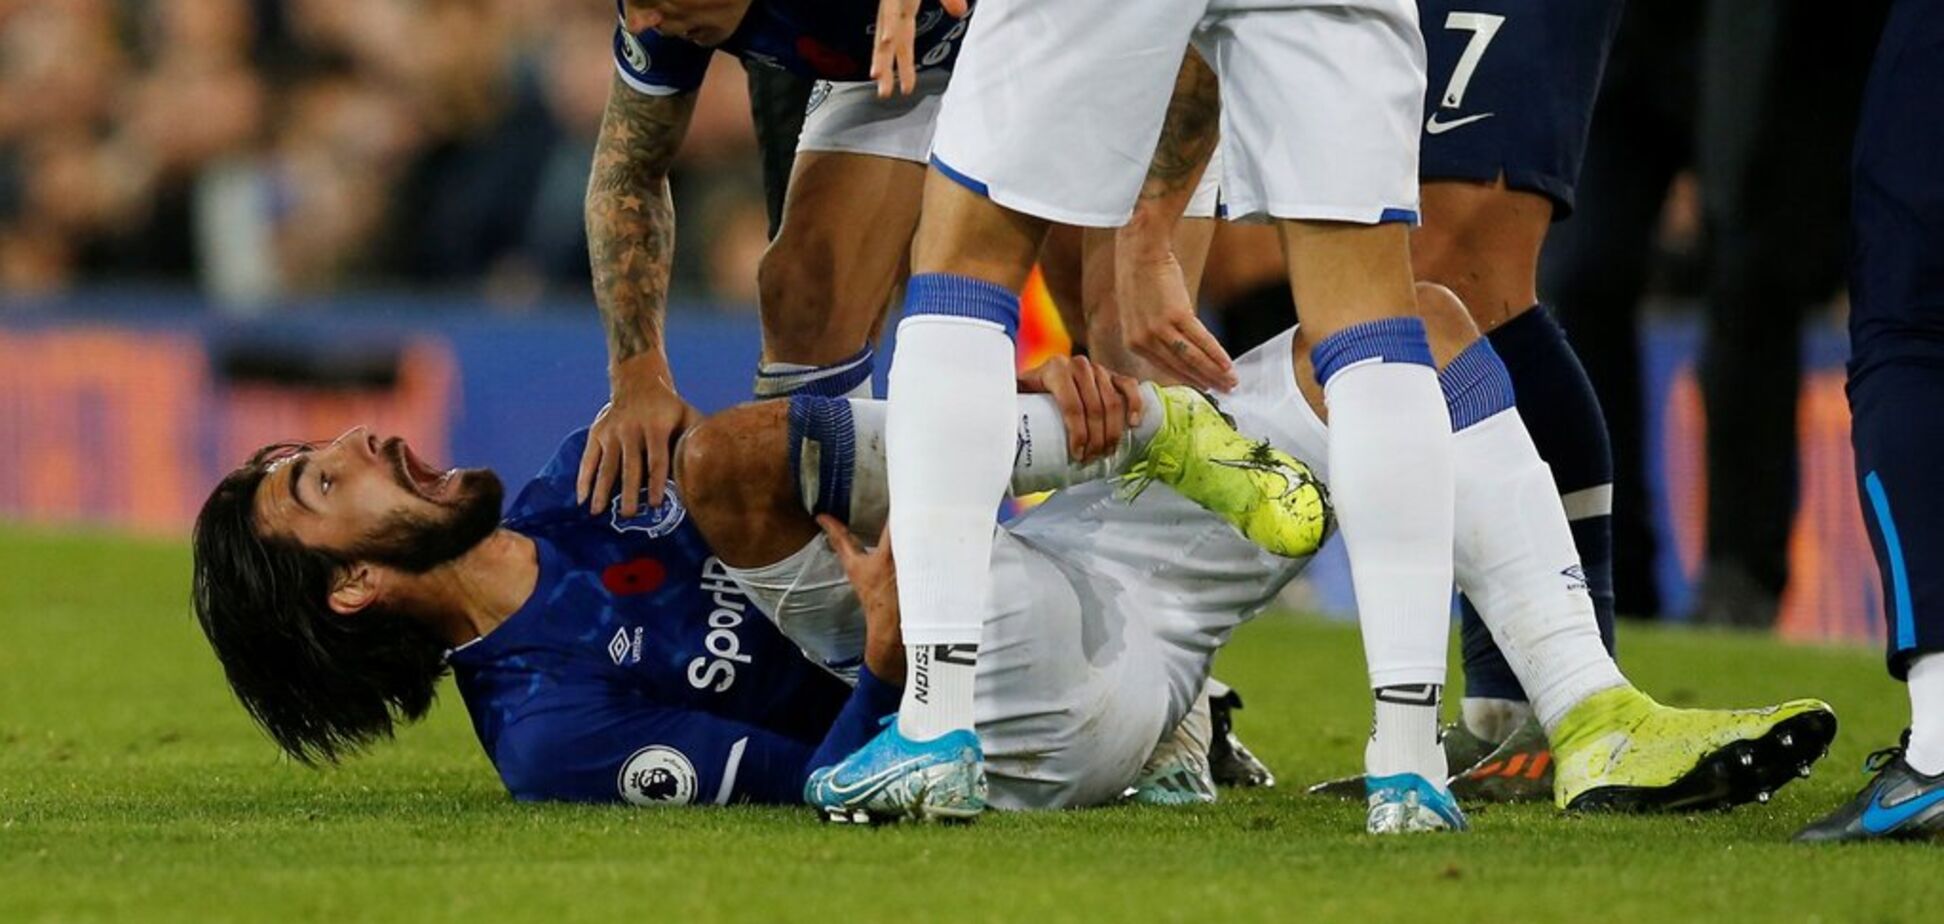 Известный футболист нанес сопернику жуткую травму и впал в истерику